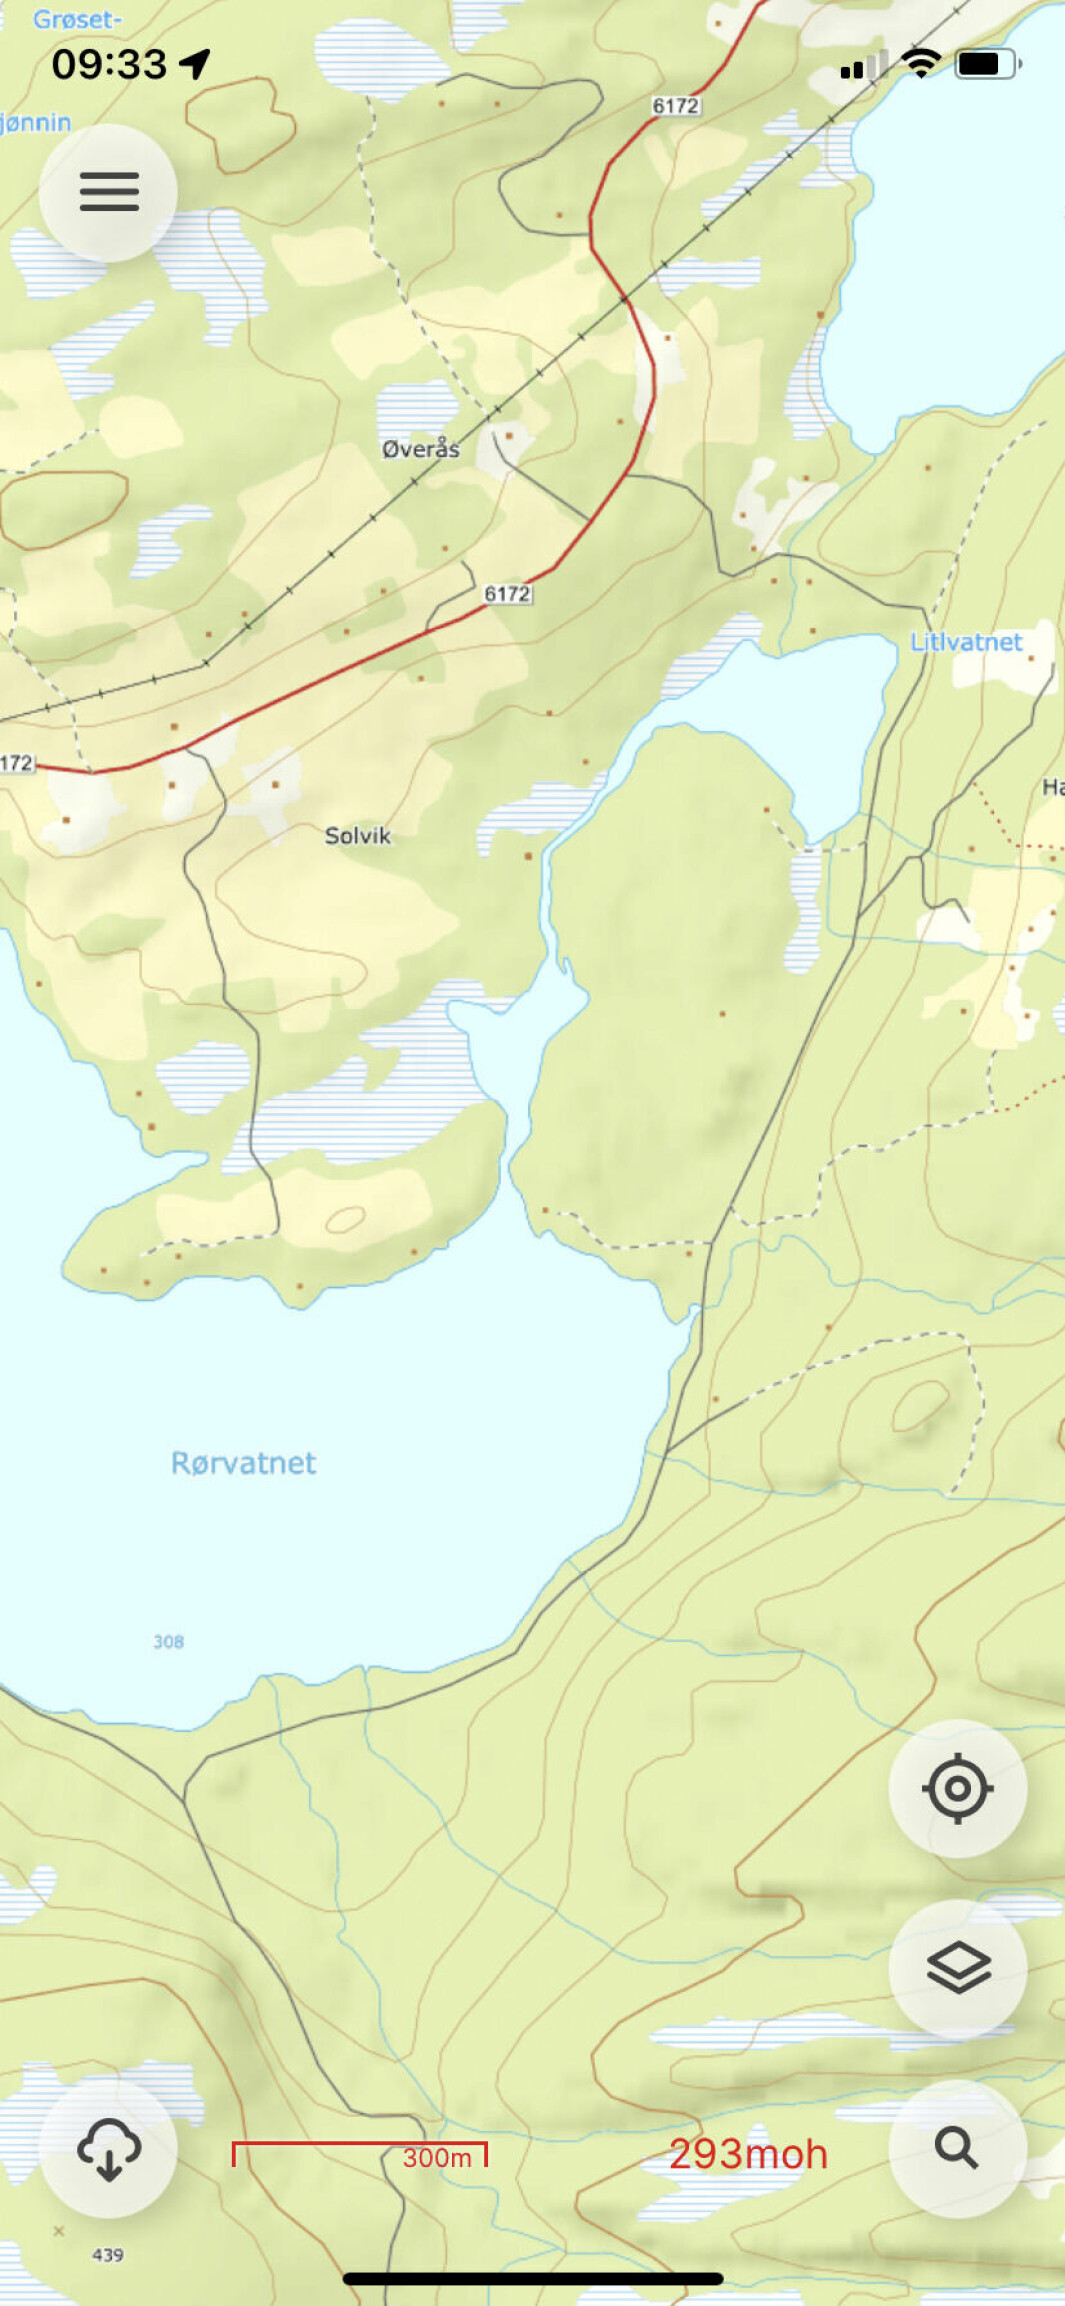 Norgeskart viser at kanalen har en lengde på ca 700 m.